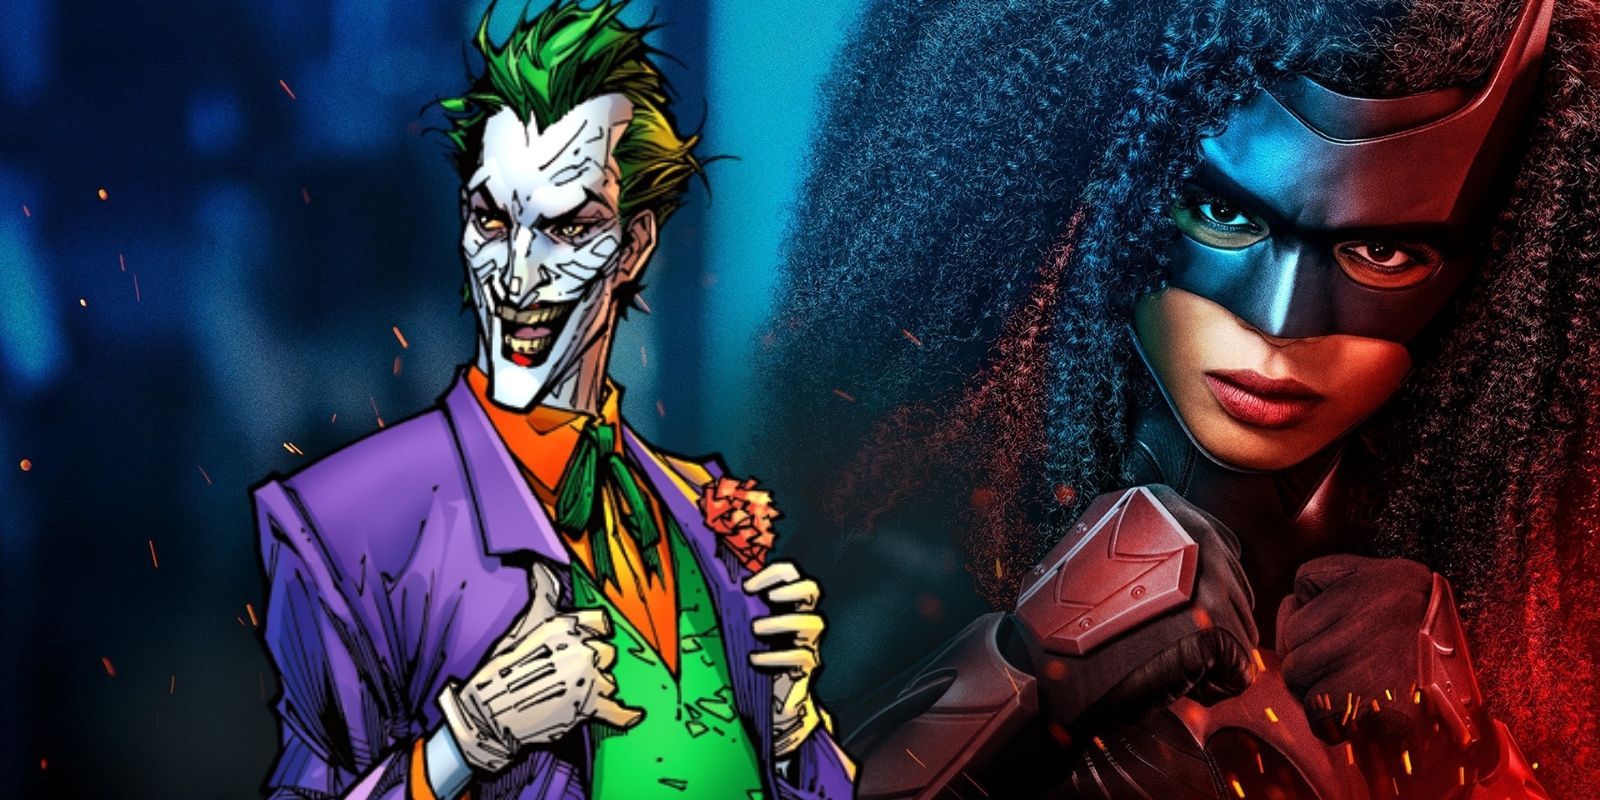 The Joker alongside the Arrowverse's Batwoman